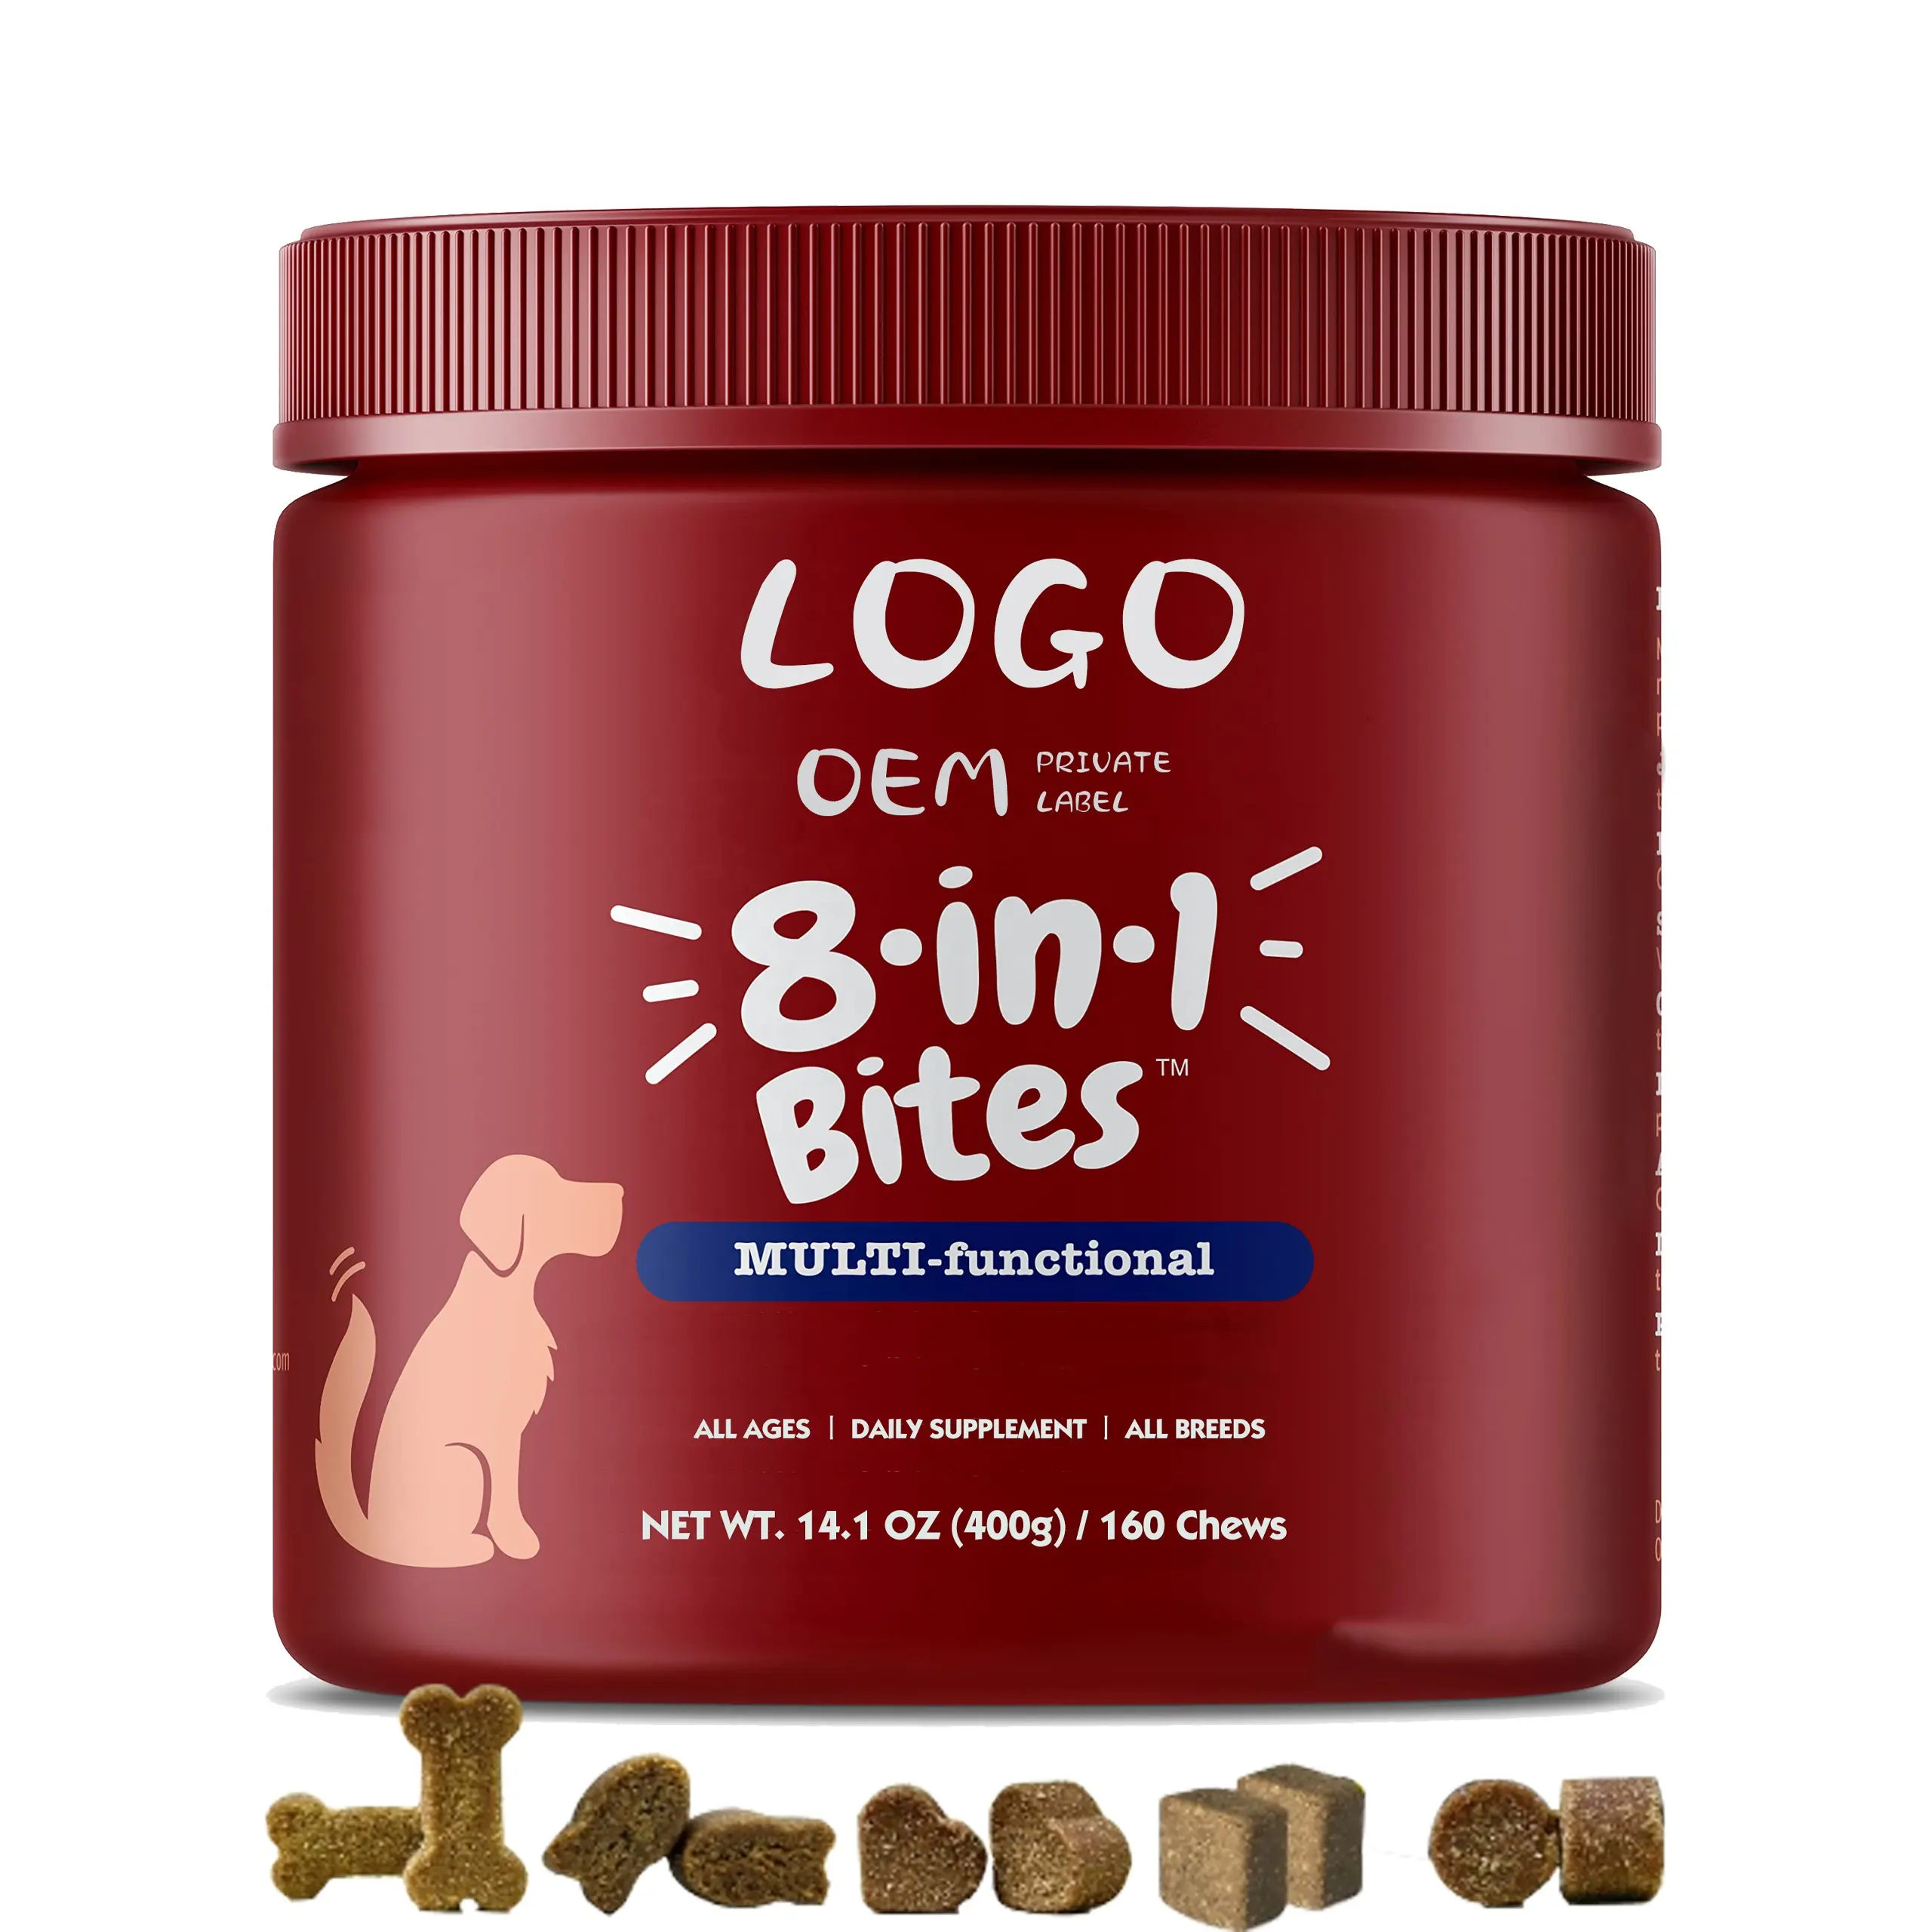 Hersteller OEM Hund Vitamin Calcium Lecithin-Supplement Hüften- und Gelenk-Supplement Flohbehandlung Haustiergesundheitspflege und Ergänzungen